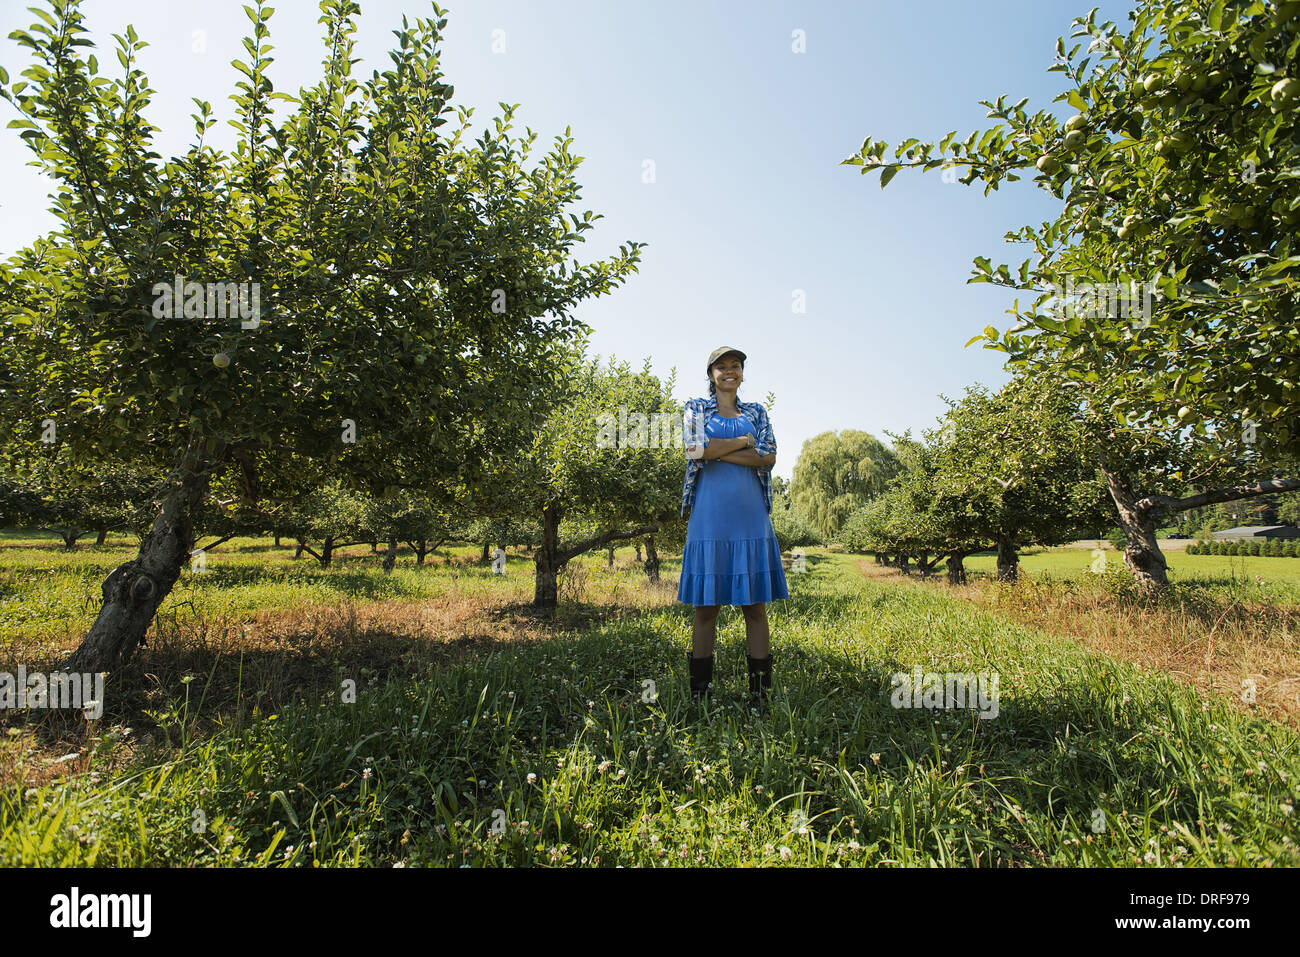 Lo stato di New York STATI UNITI D'AMERICA donna raccolta di mele in un frutteto di alberi da frutto Foto Stock